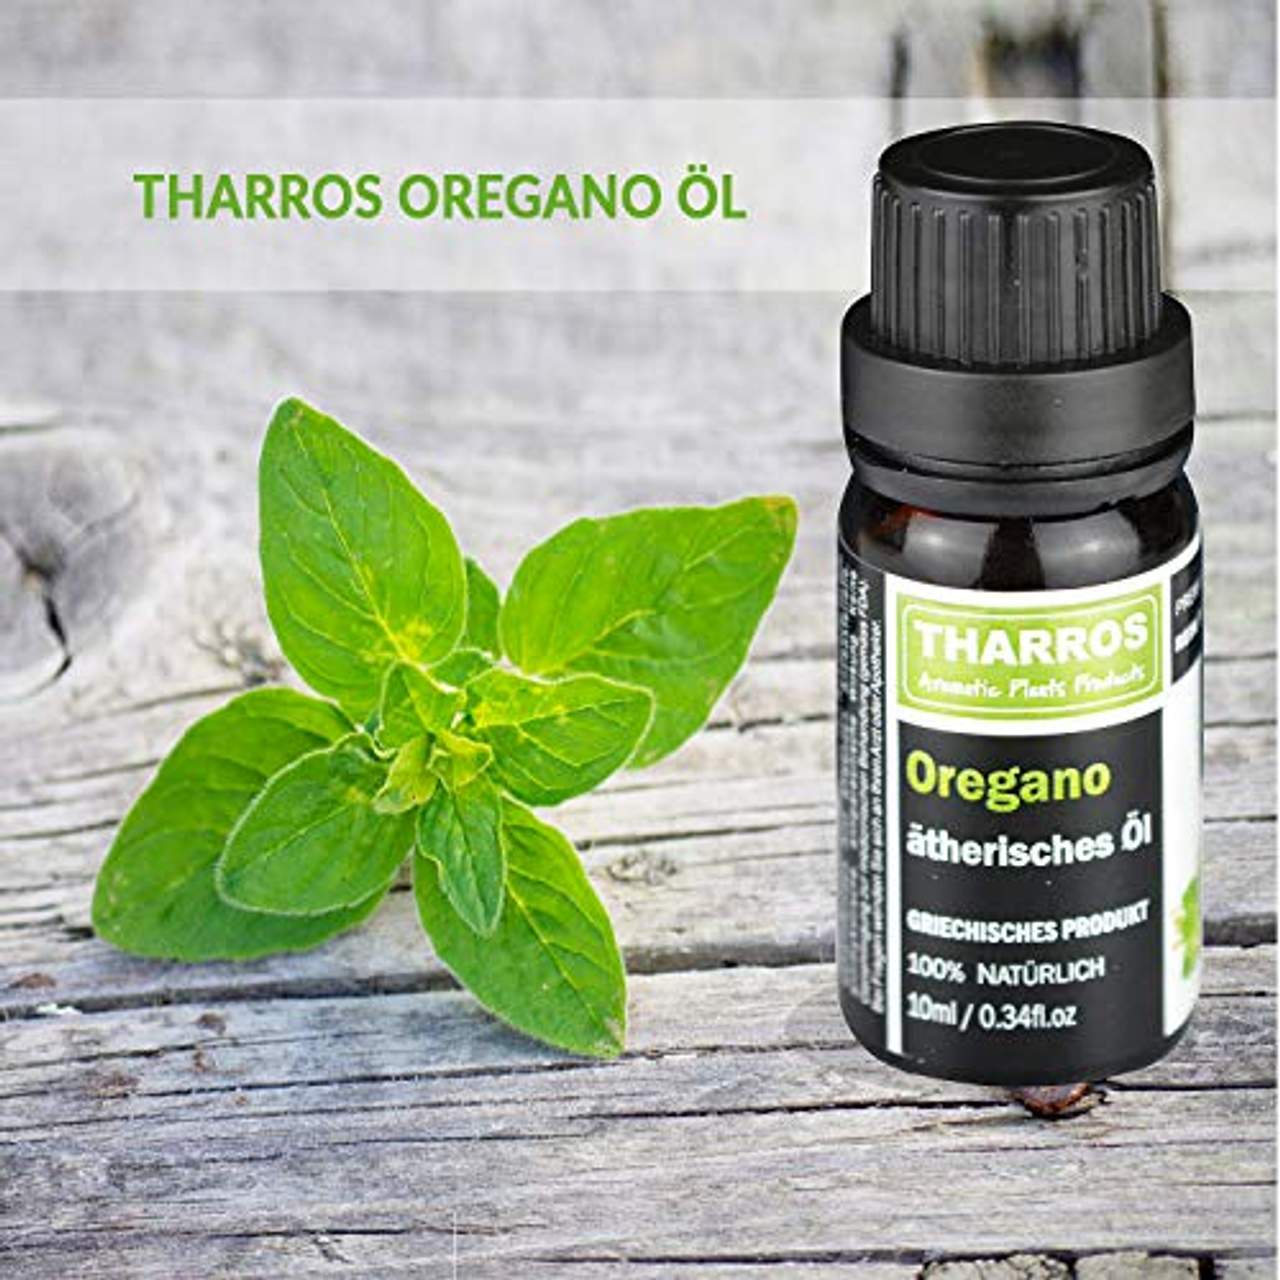 Tharros Oregano Öl zum Einnehmen